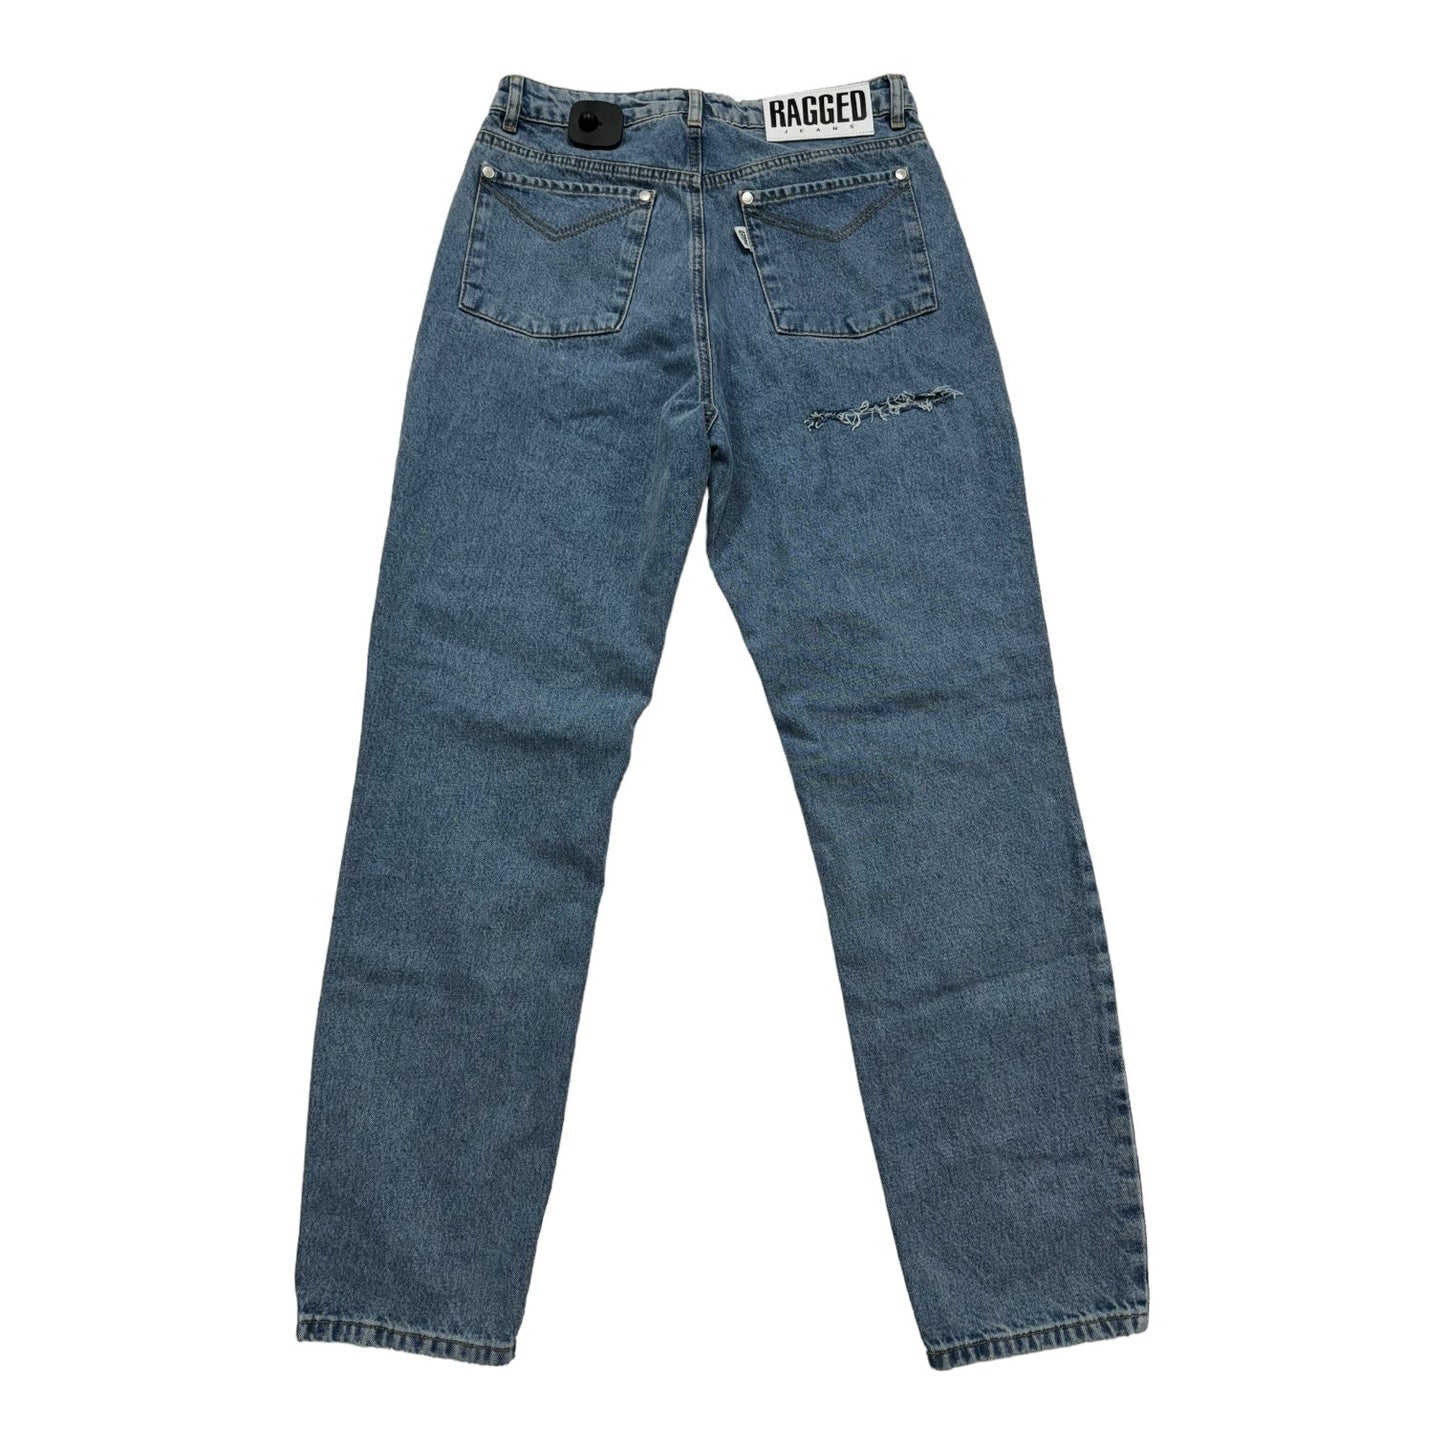 Blue Jeans Boyfriend by RAGGED JEANS, Size 8